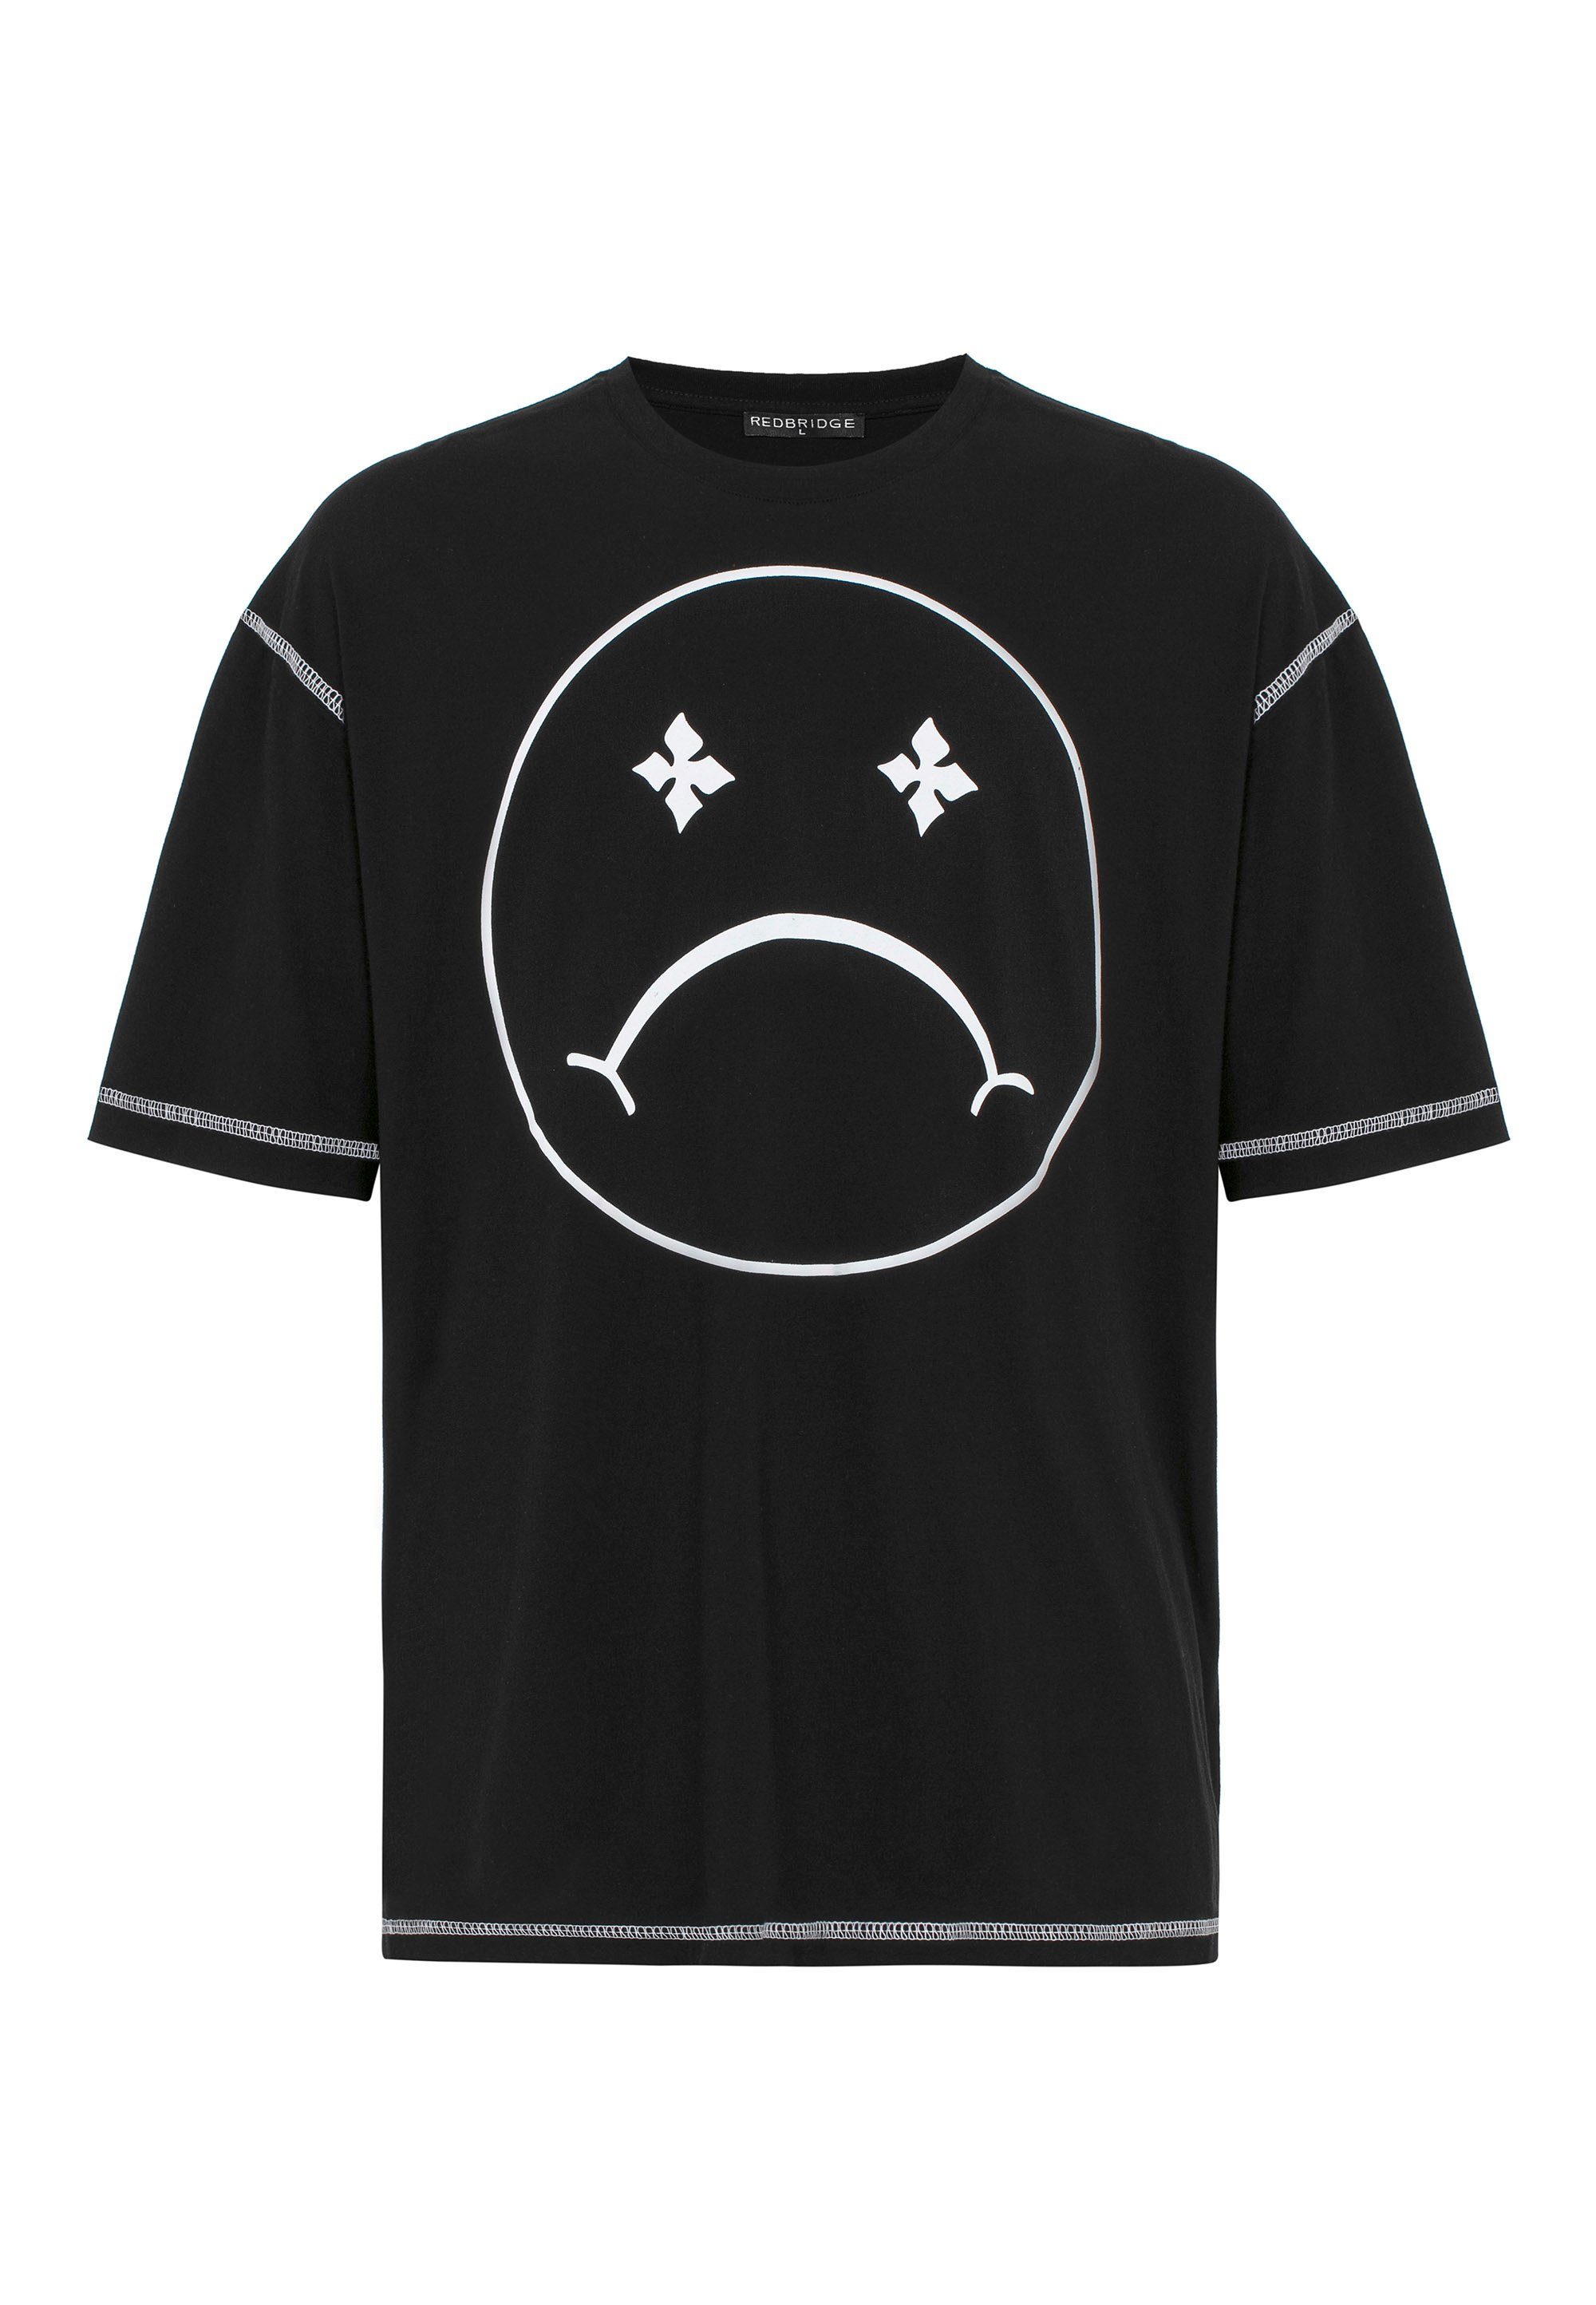 RedBridge T-Shirt Aberdeen mit schwarz Sad modischem Smiley-Frontprint